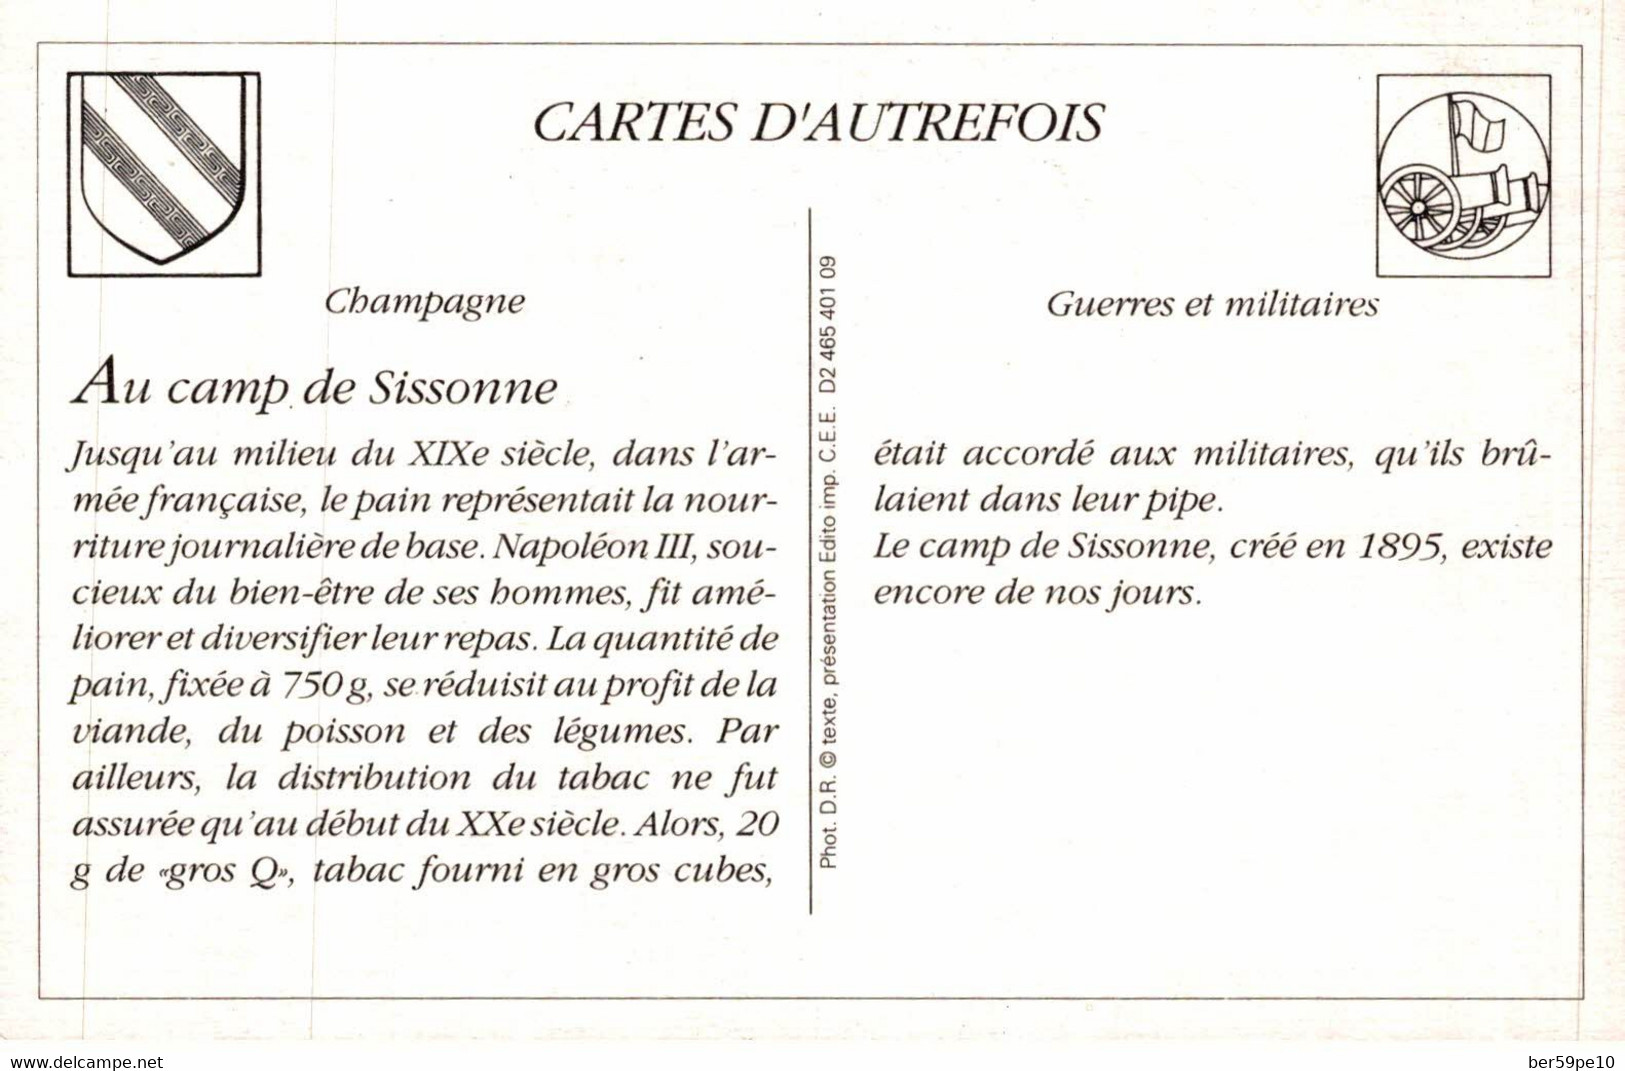 CARTE D'AUTREFOIS GUERRES ET MILITAIRES CHAMPAGNE AU CAMP DE SISSONNE - Champagne - Ardenne